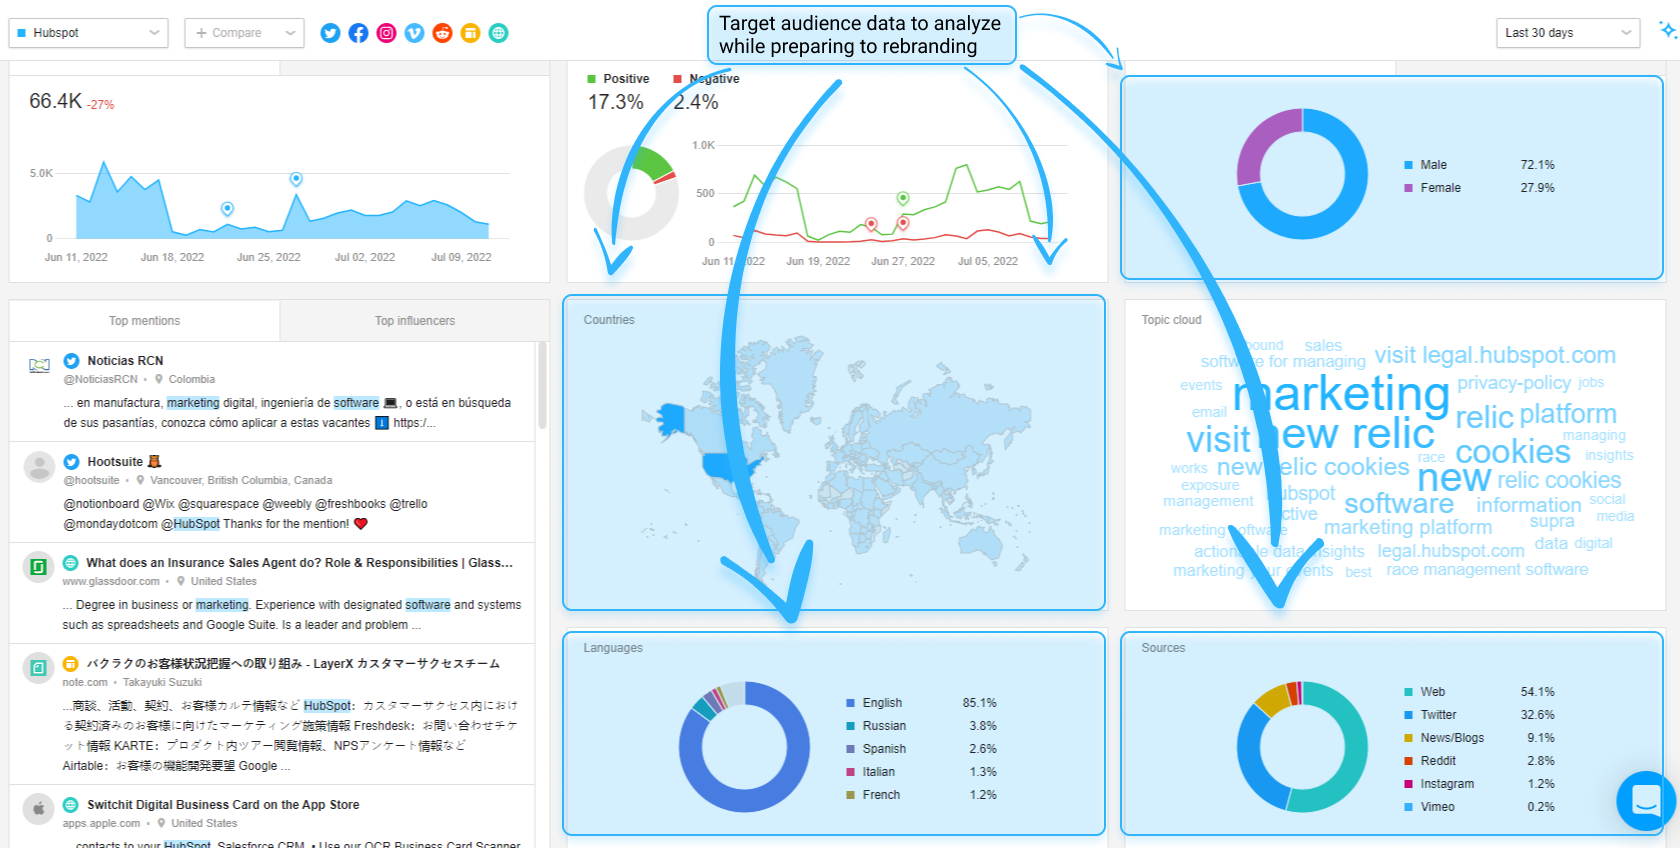 Awario Dashboard: target audience data